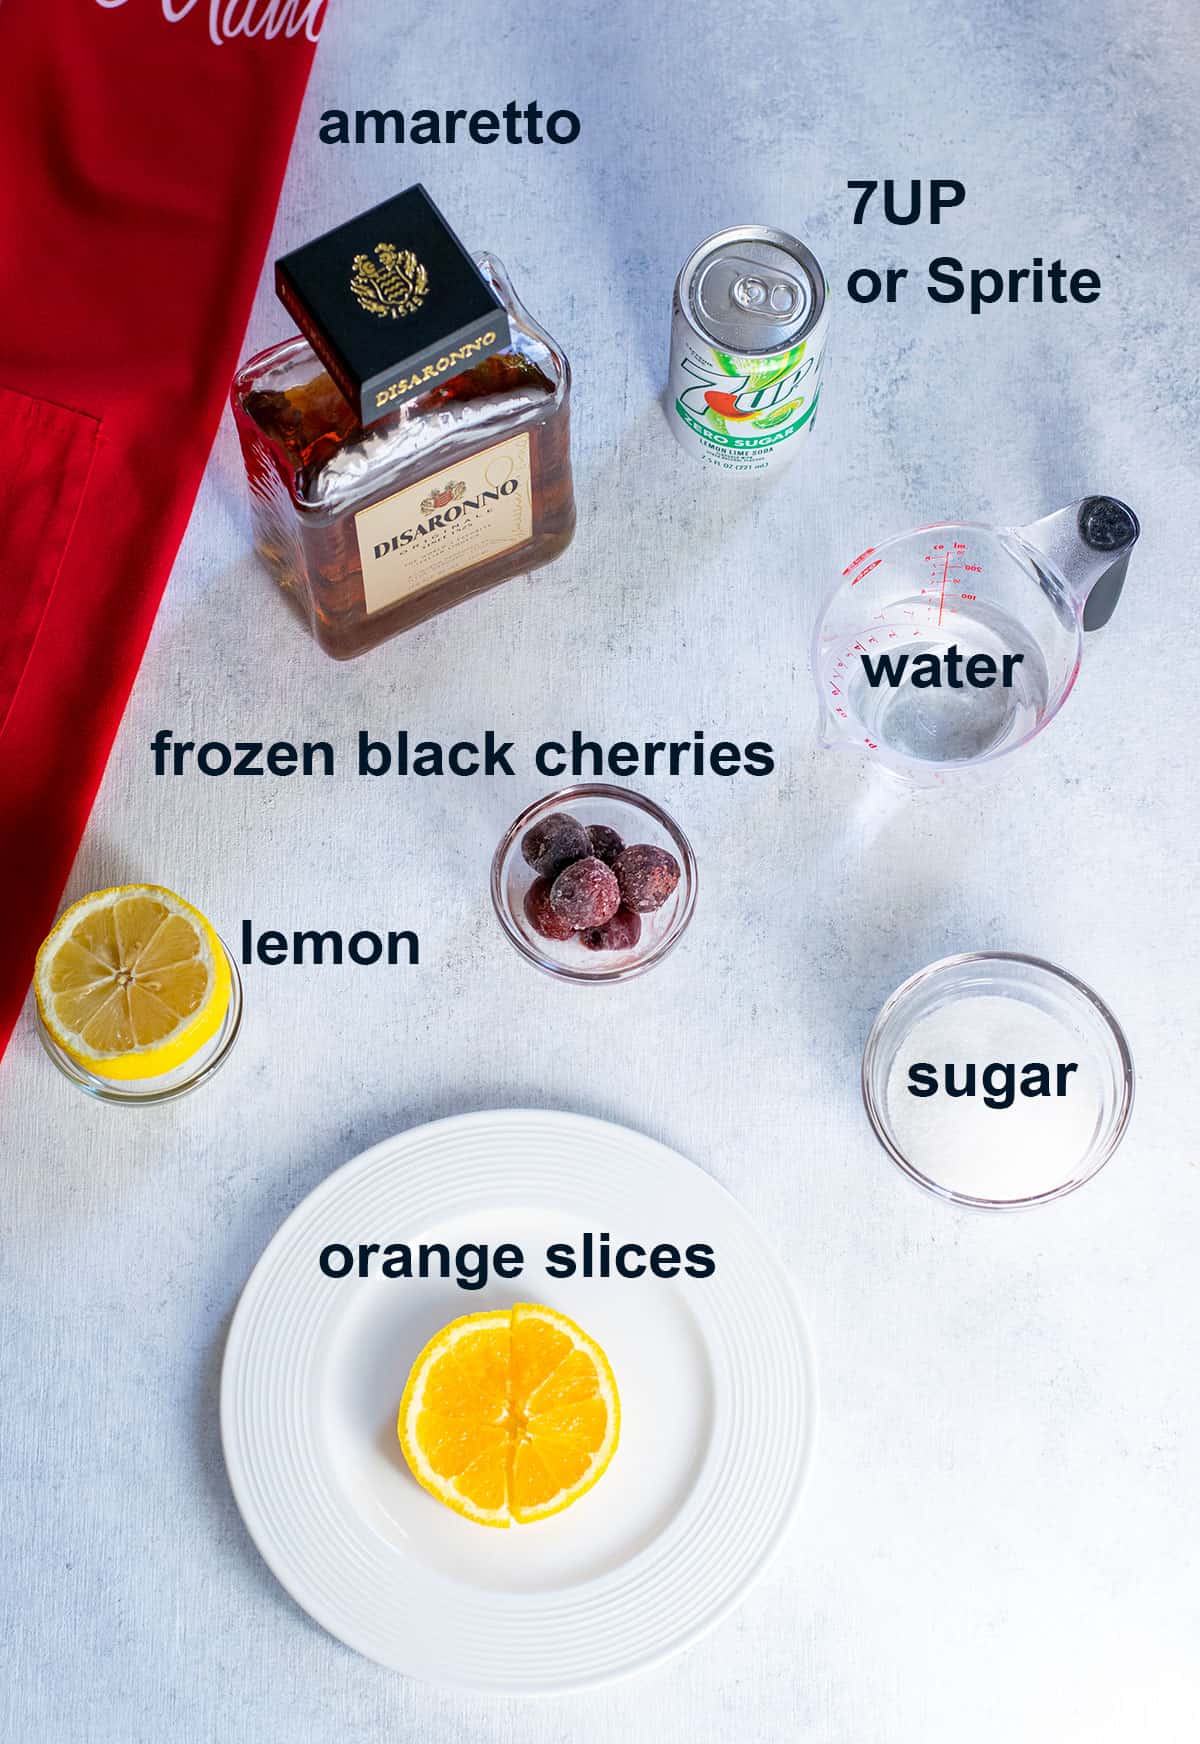 amaretto, 7UP, black cherries, water, sugar, lemon half, orange slices